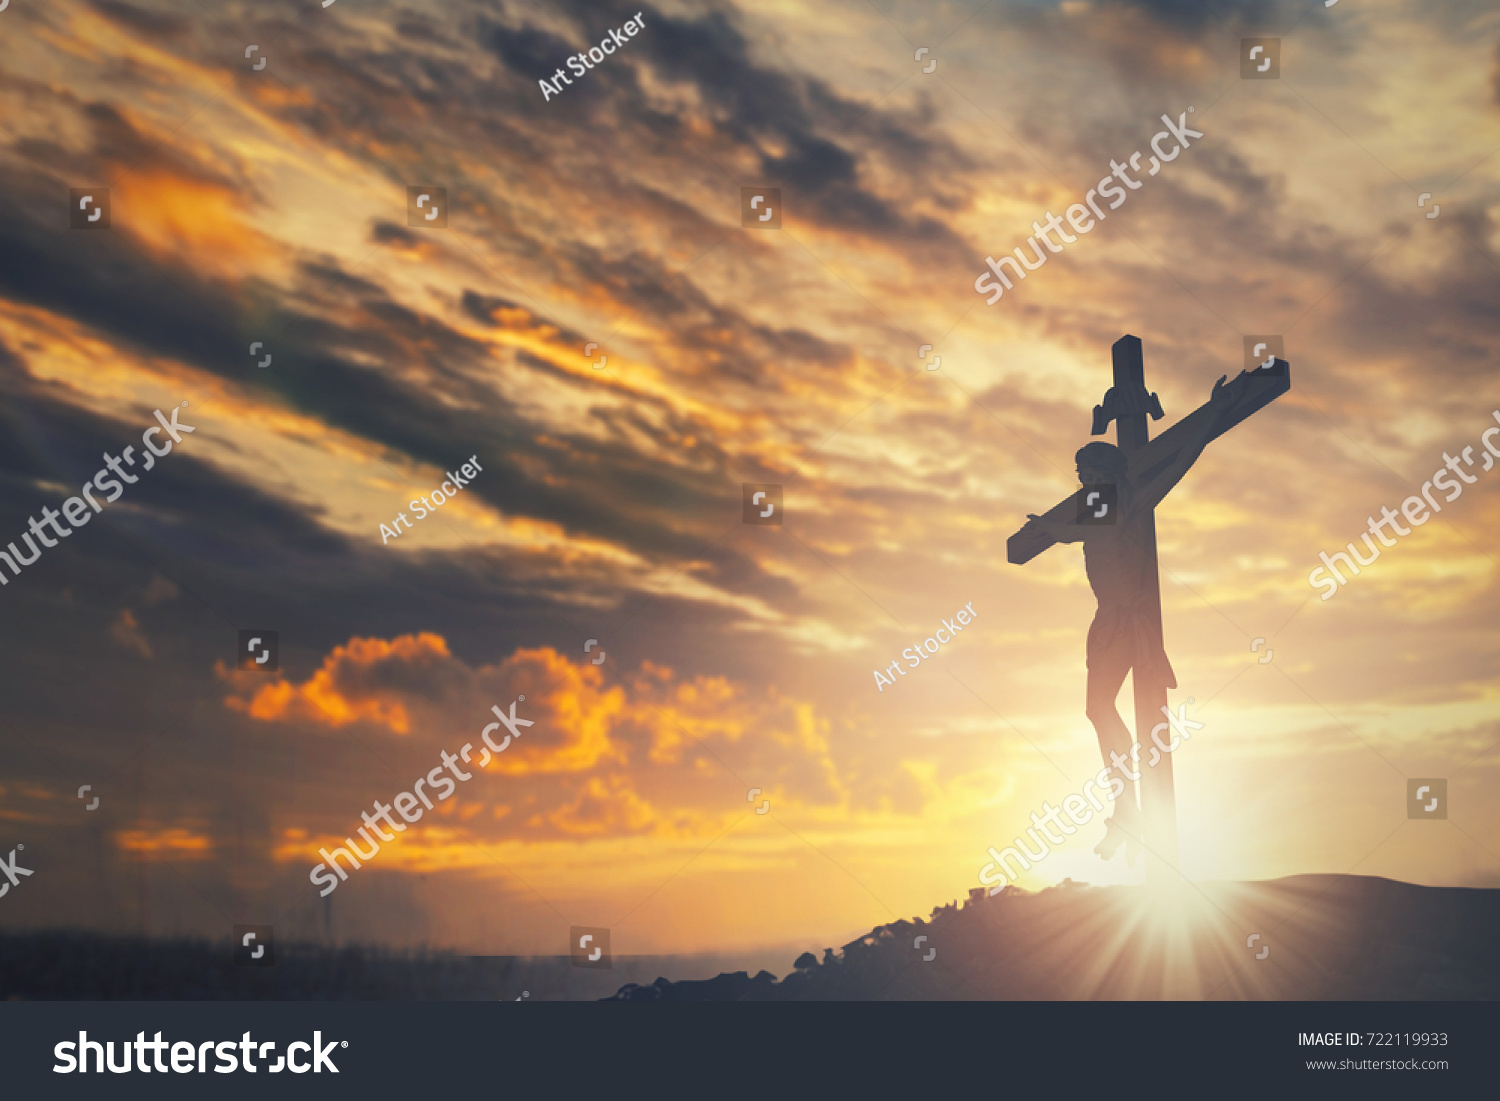 Jesus christ crucifix cross on heaven sunrise concept christmas catholic religion, forgiving christian worship god, happy easter day, praying praise good friday sunrise background, bible gospel sunday #722119933